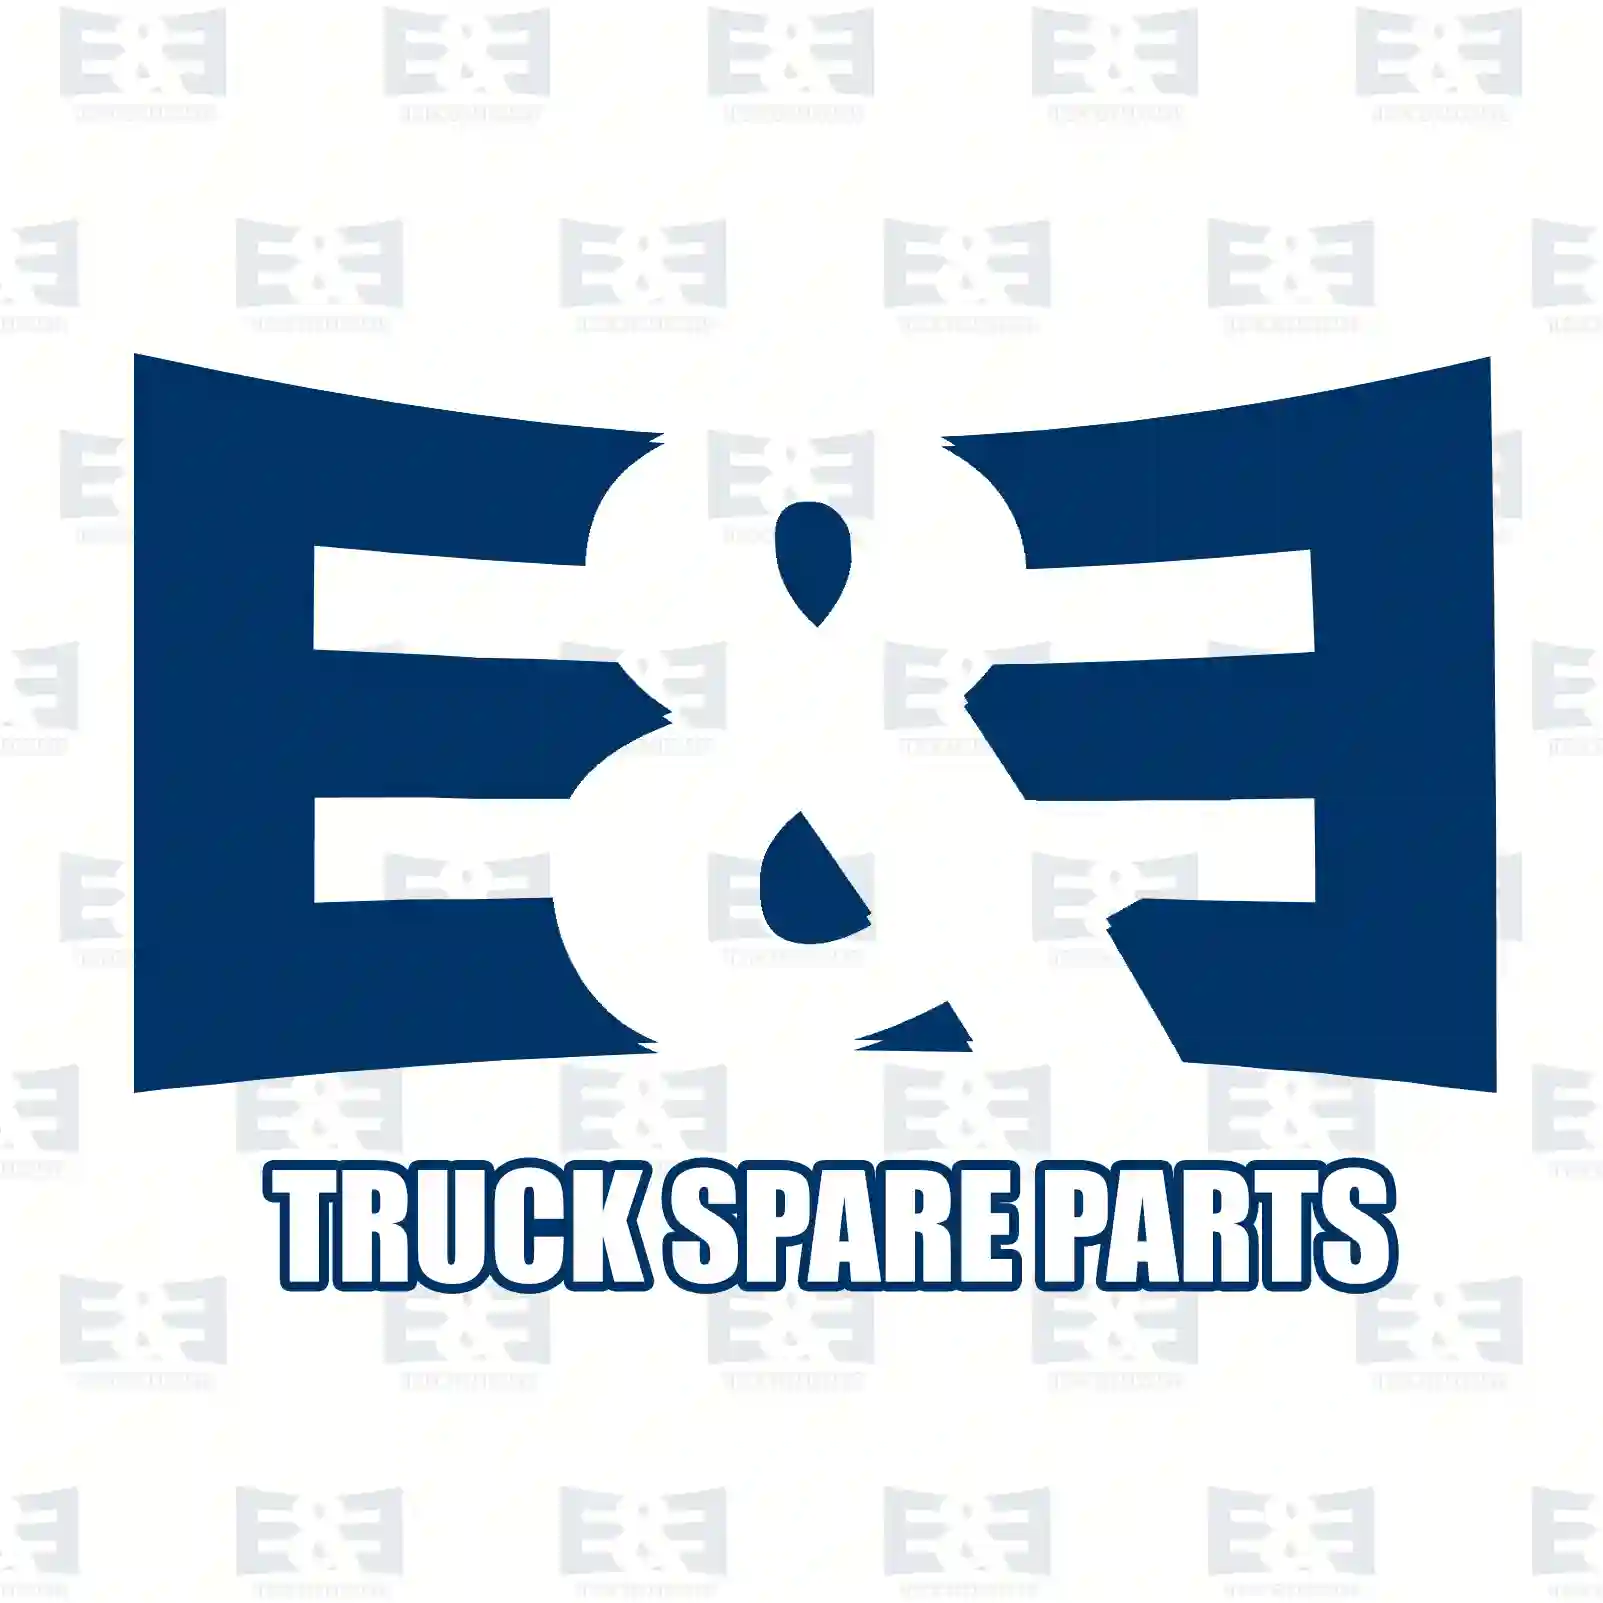 Cabin shock absorber, 2E2275493, 08141735, 42555627, 504070971, 98408735, 08141735, 42555627, 504070971, 98408735, 08141735, 42555627, 504070971, 98408735 ||  2E2275493 E&E Truck Spare Parts | Truck Spare Parts, Auotomotive Spare Parts Cabin shock absorber, 2E2275493, 08141735, 42555627, 504070971, 98408735, 08141735, 42555627, 504070971, 98408735, 08141735, 42555627, 504070971, 98408735 ||  2E2275493 E&E Truck Spare Parts | Truck Spare Parts, Auotomotive Spare Parts